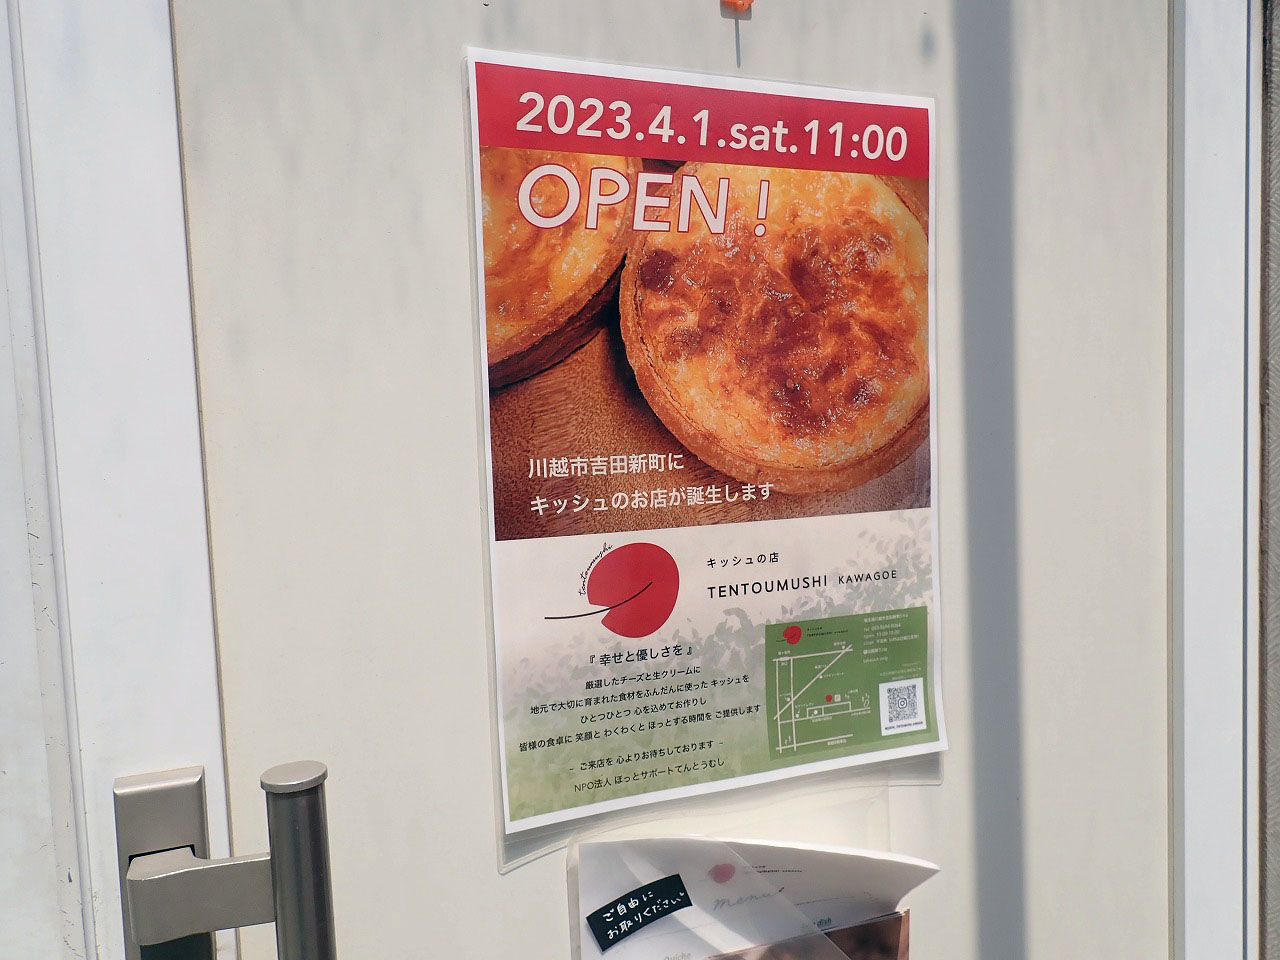 2023年4月にオープンの『キッシュの店 TENTOUMUSHI KAWAGOE』